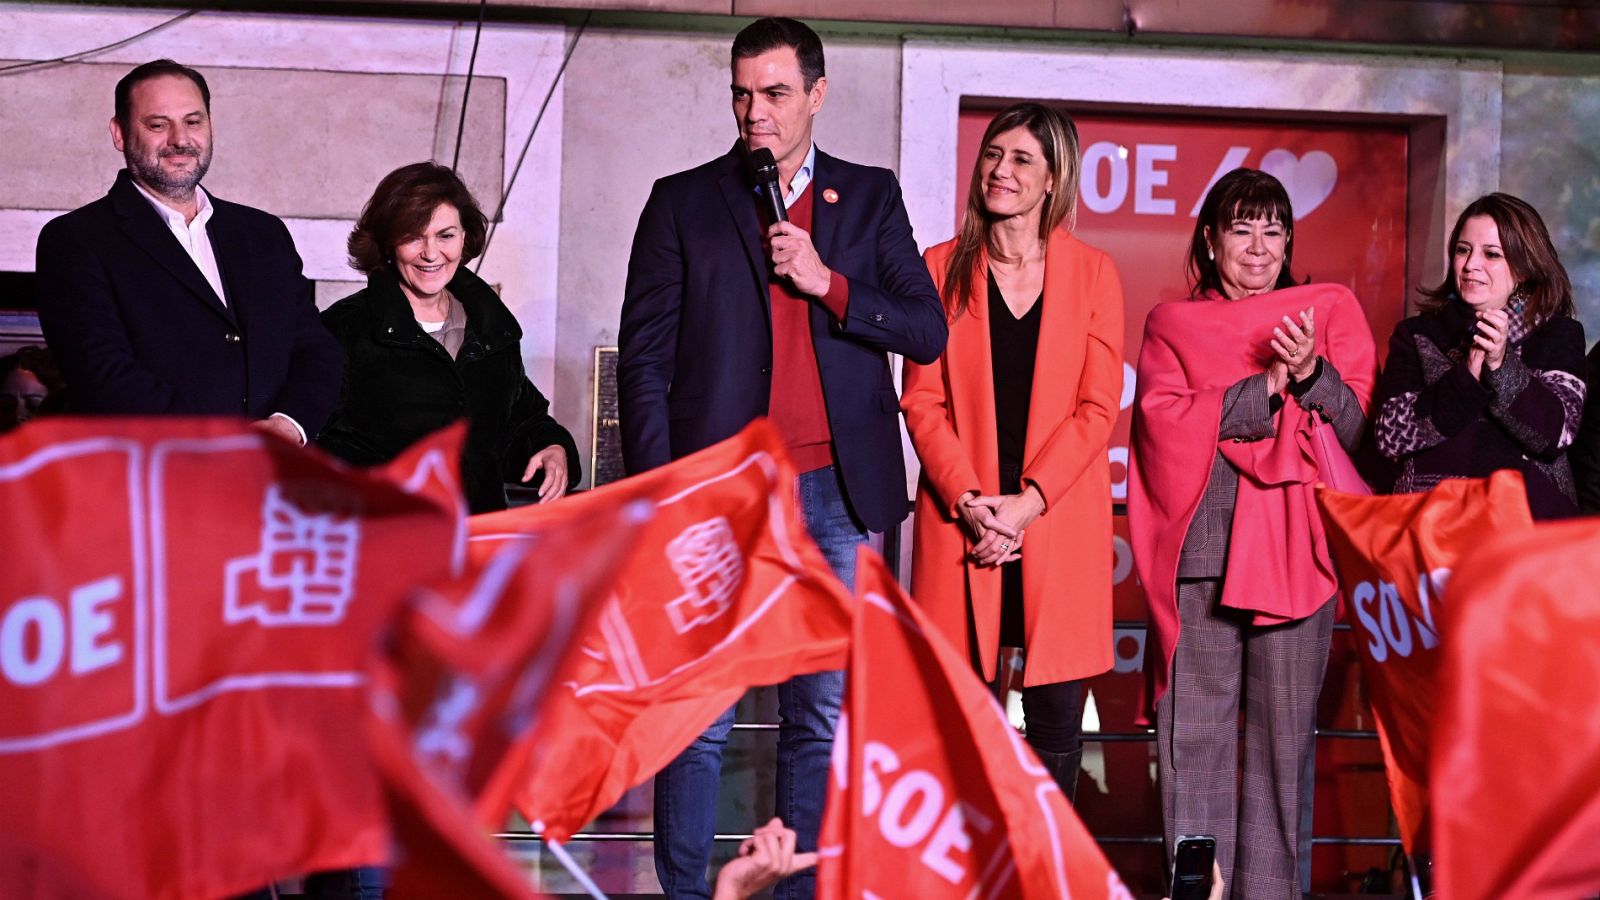 Elecciones generales | Resumen de la noche electoral: el PSOE gana, Vox se dispara y Cs se hunde - RTVE.es